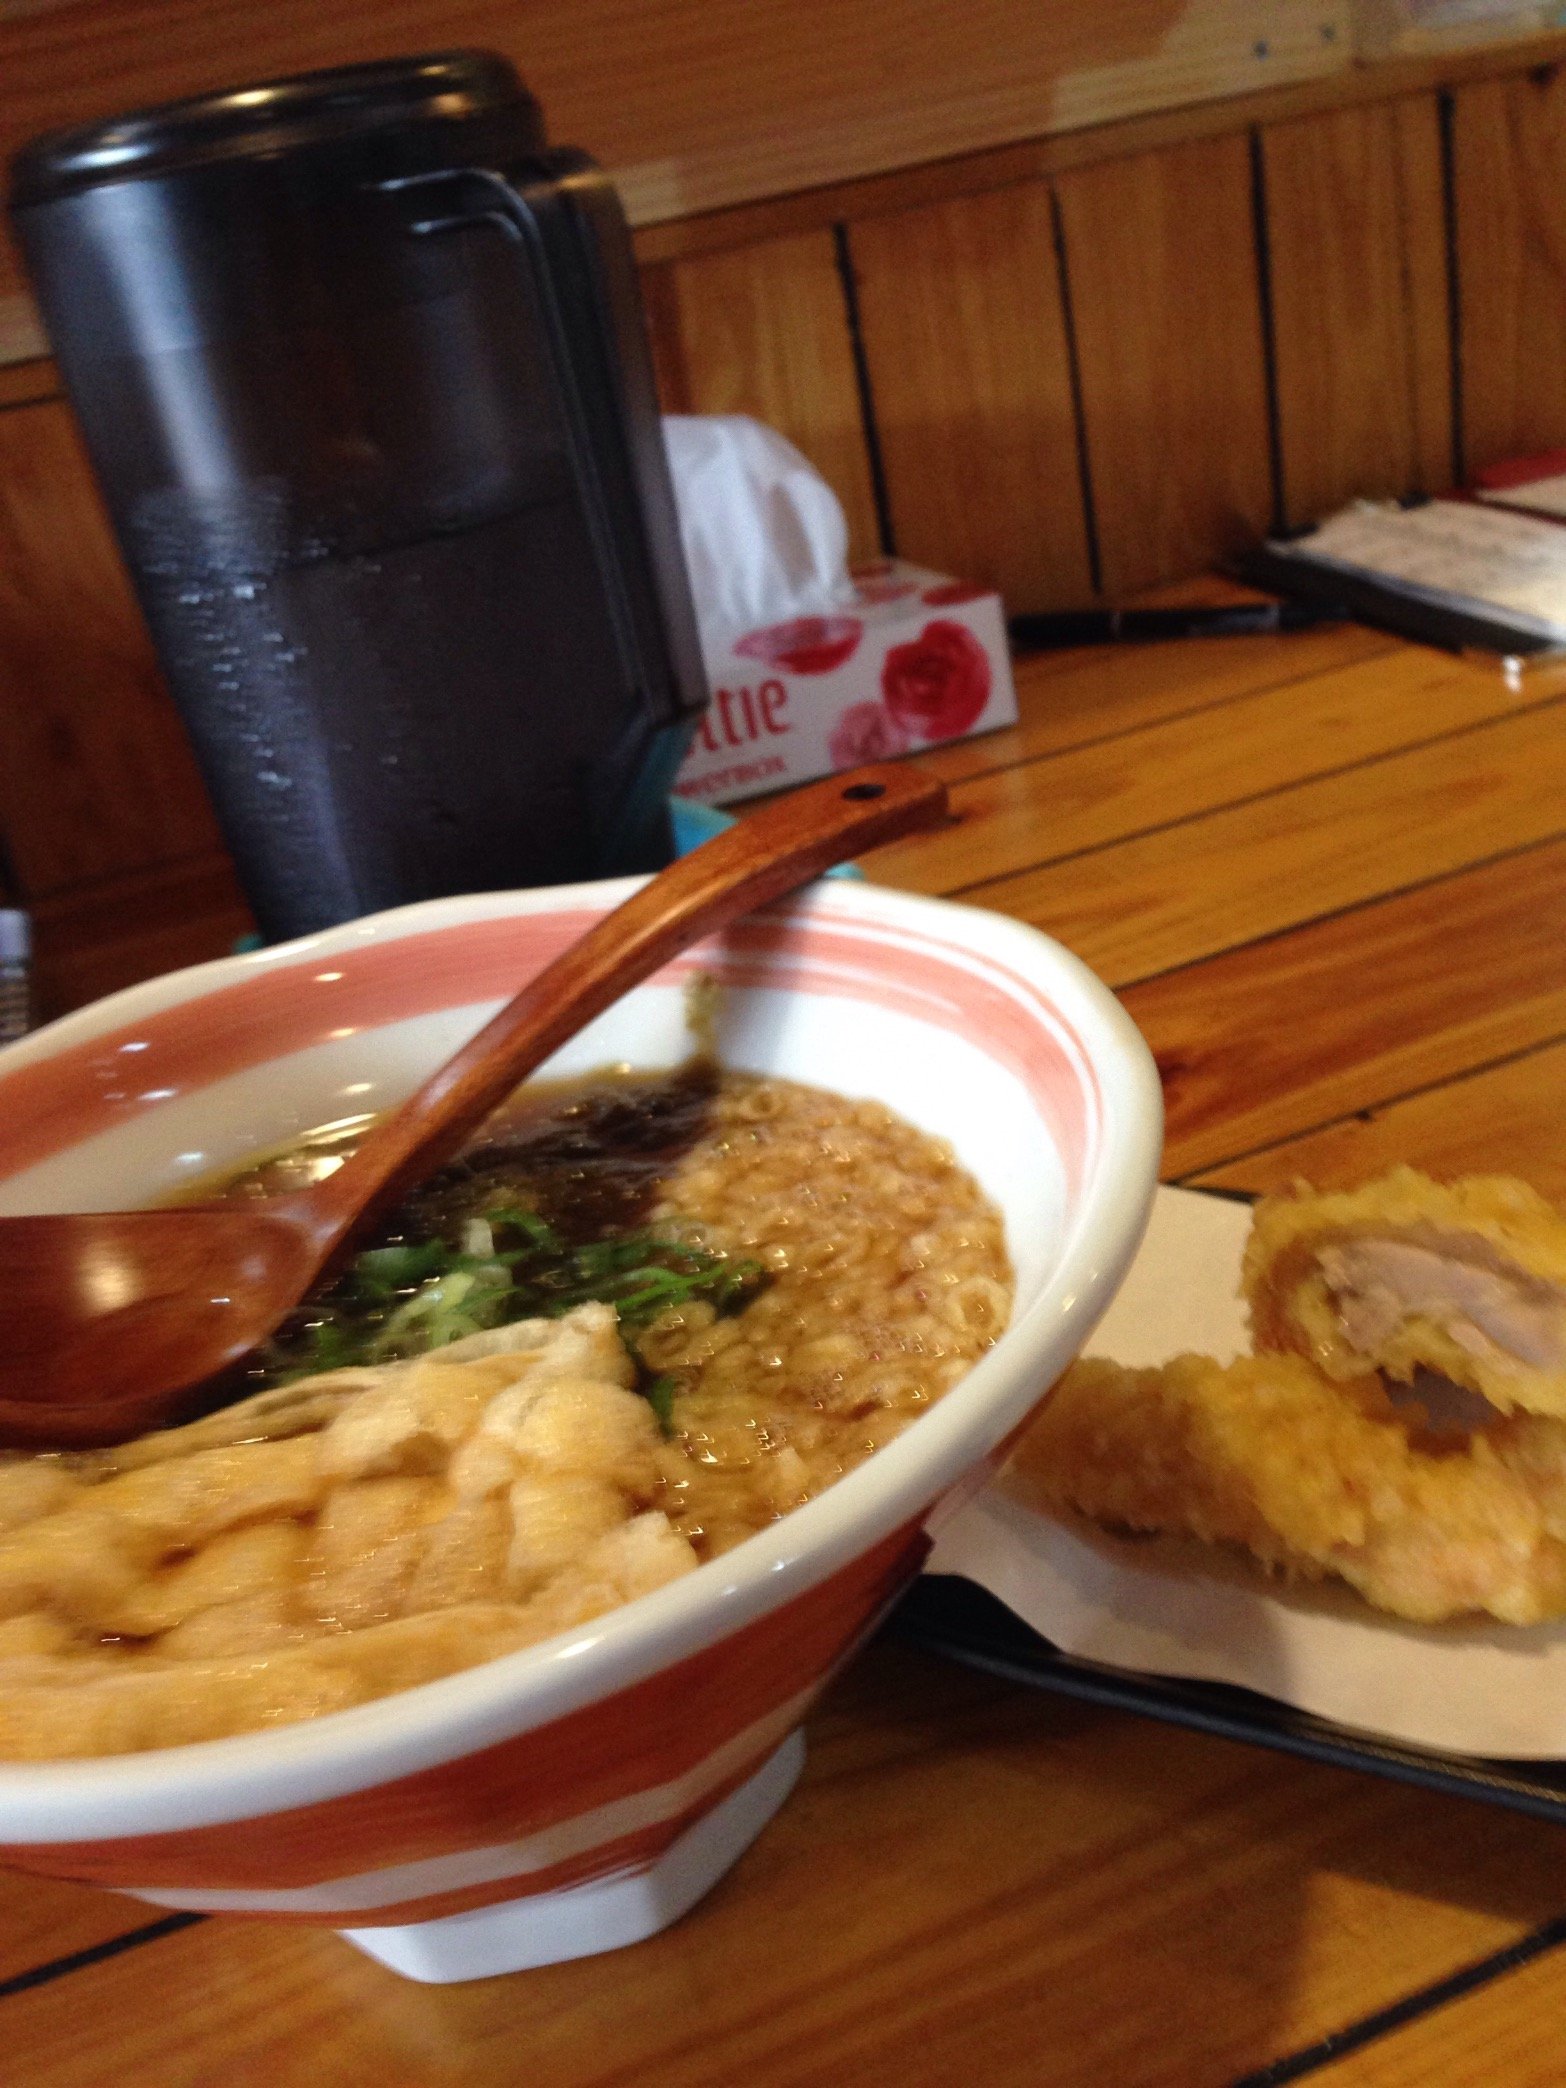 「らどん小椋」の応援団長です！らどん小椋に行って頂いてツイートもして下さってありがとうござます！これからもらどん小椋をどんどん盛り上げていきたいのでフォロー宜しくお願いします！
#ラーメン #うどん #大阪 #つけ麺 #チャーシュー #鶏天 #ramen #udon #Fuse station